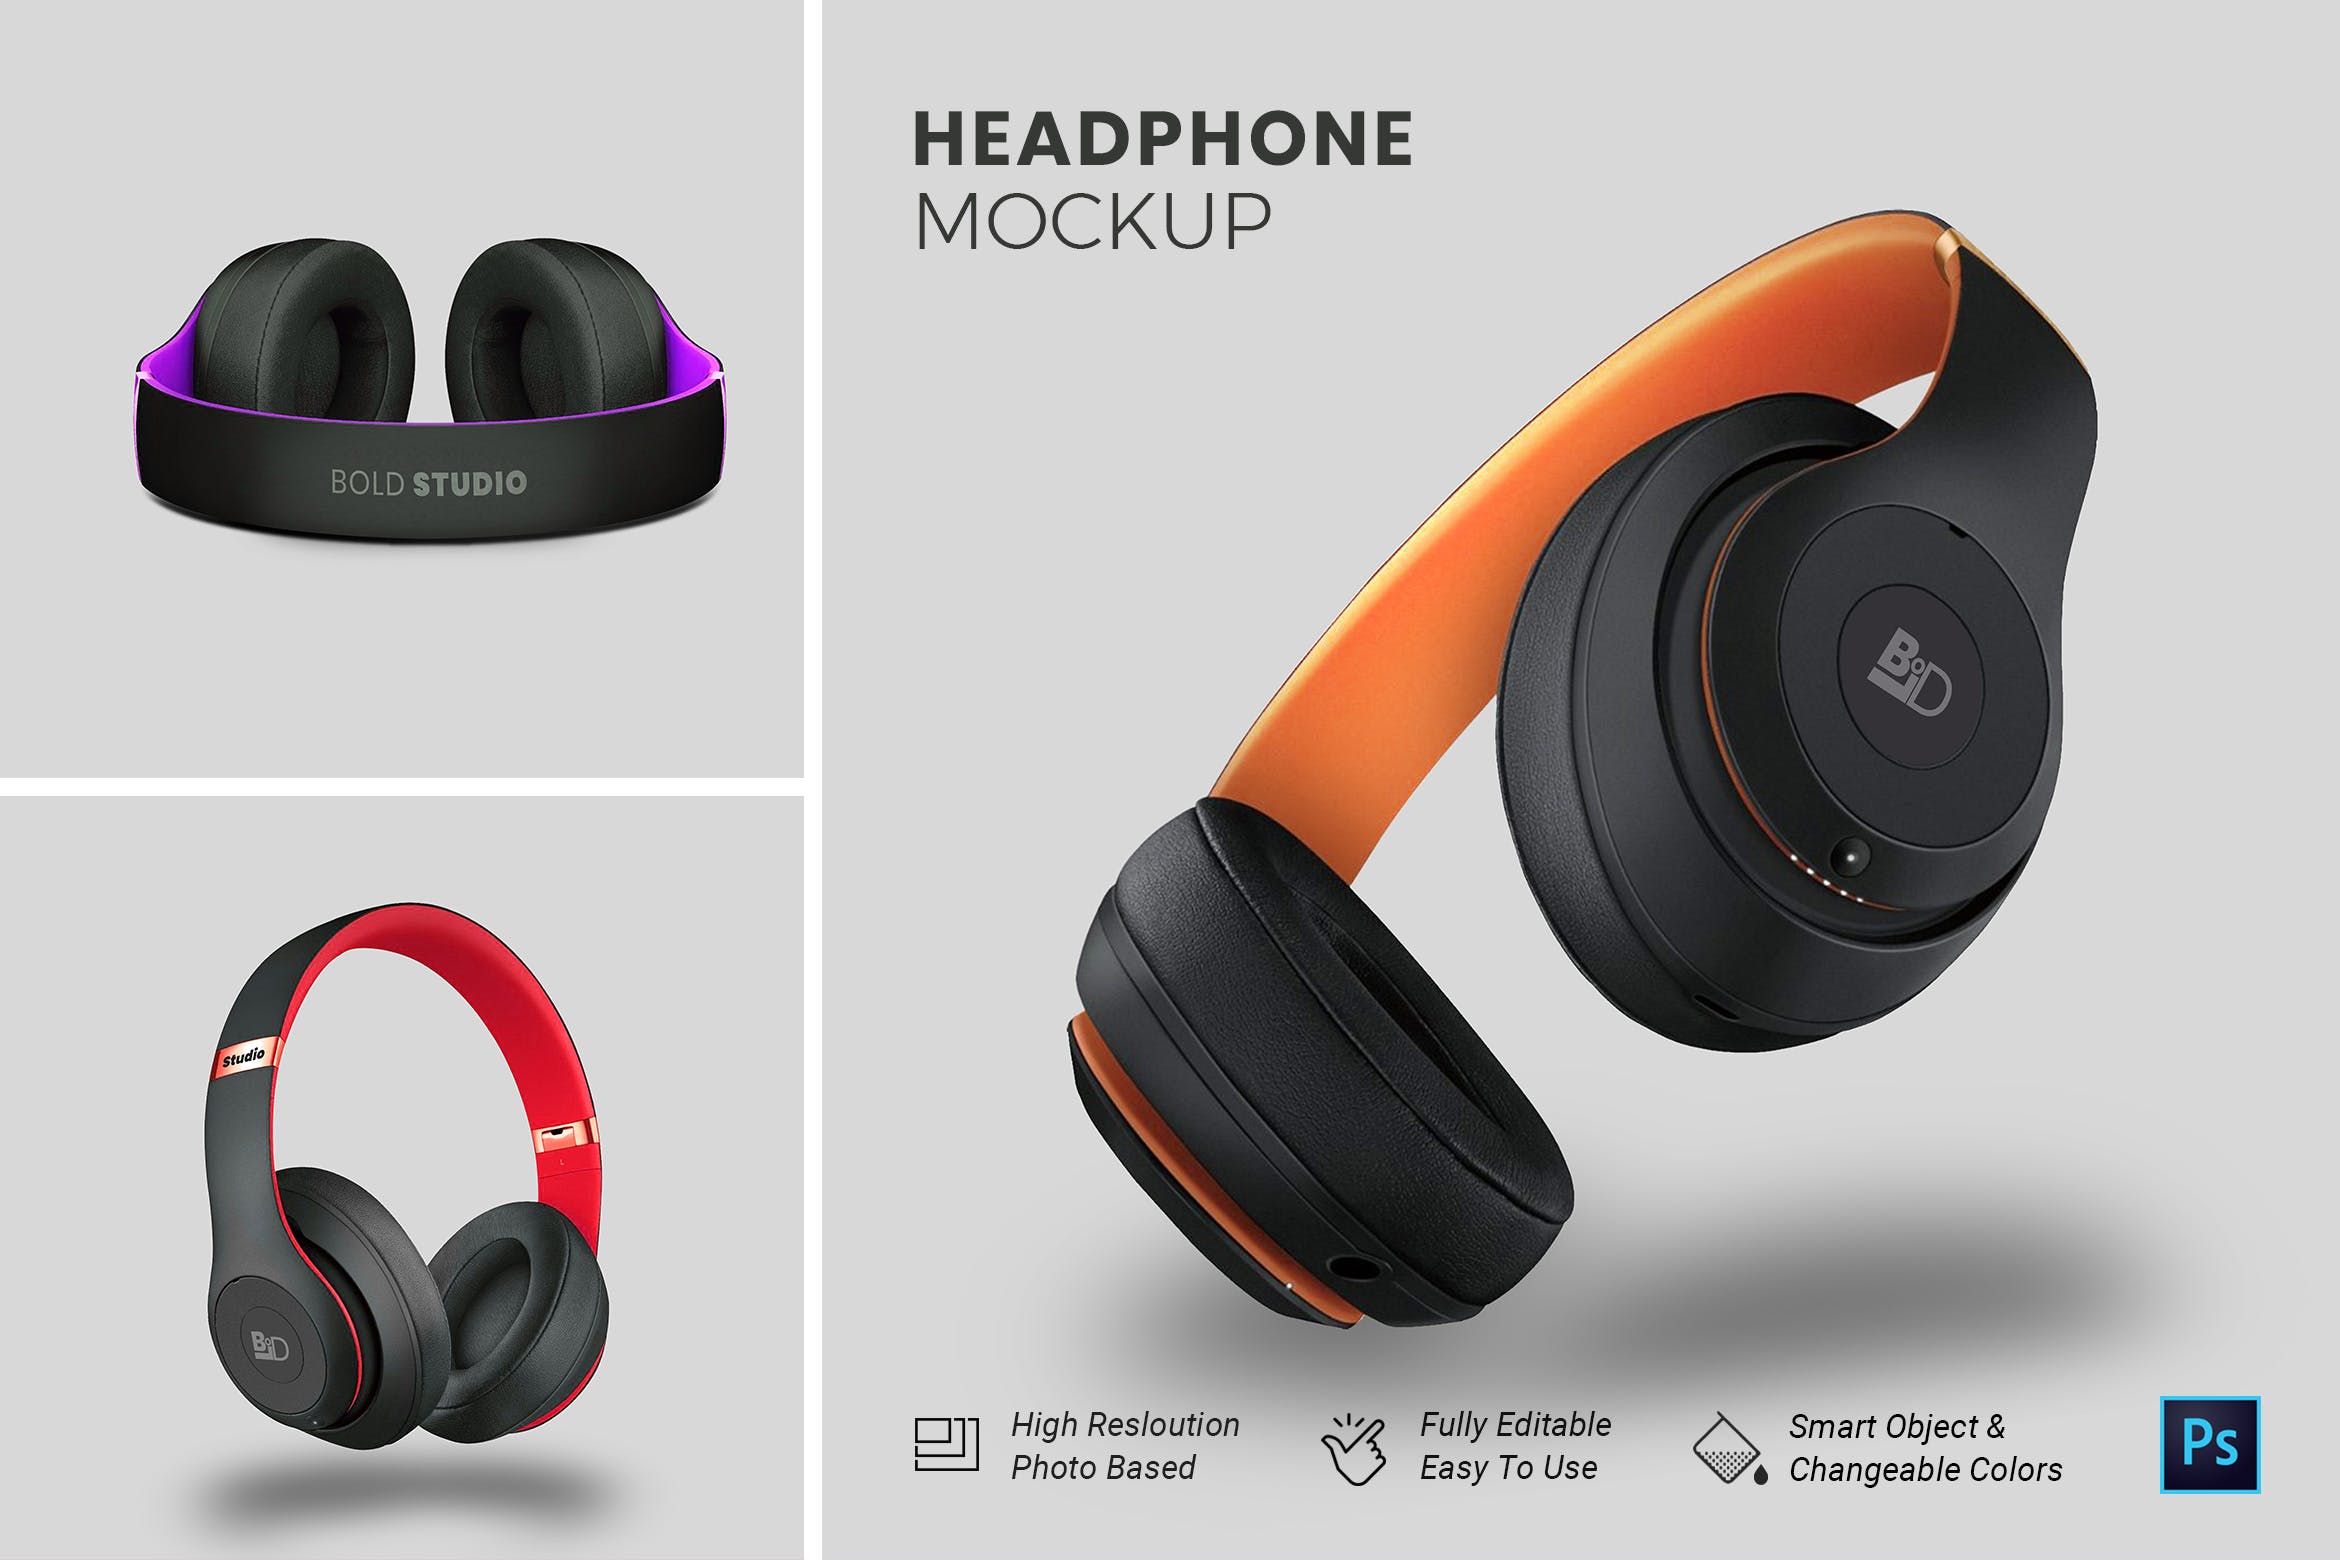 头戴式耳机设计效果图第一素材精选样机模板 HeadPhone Mockup插图